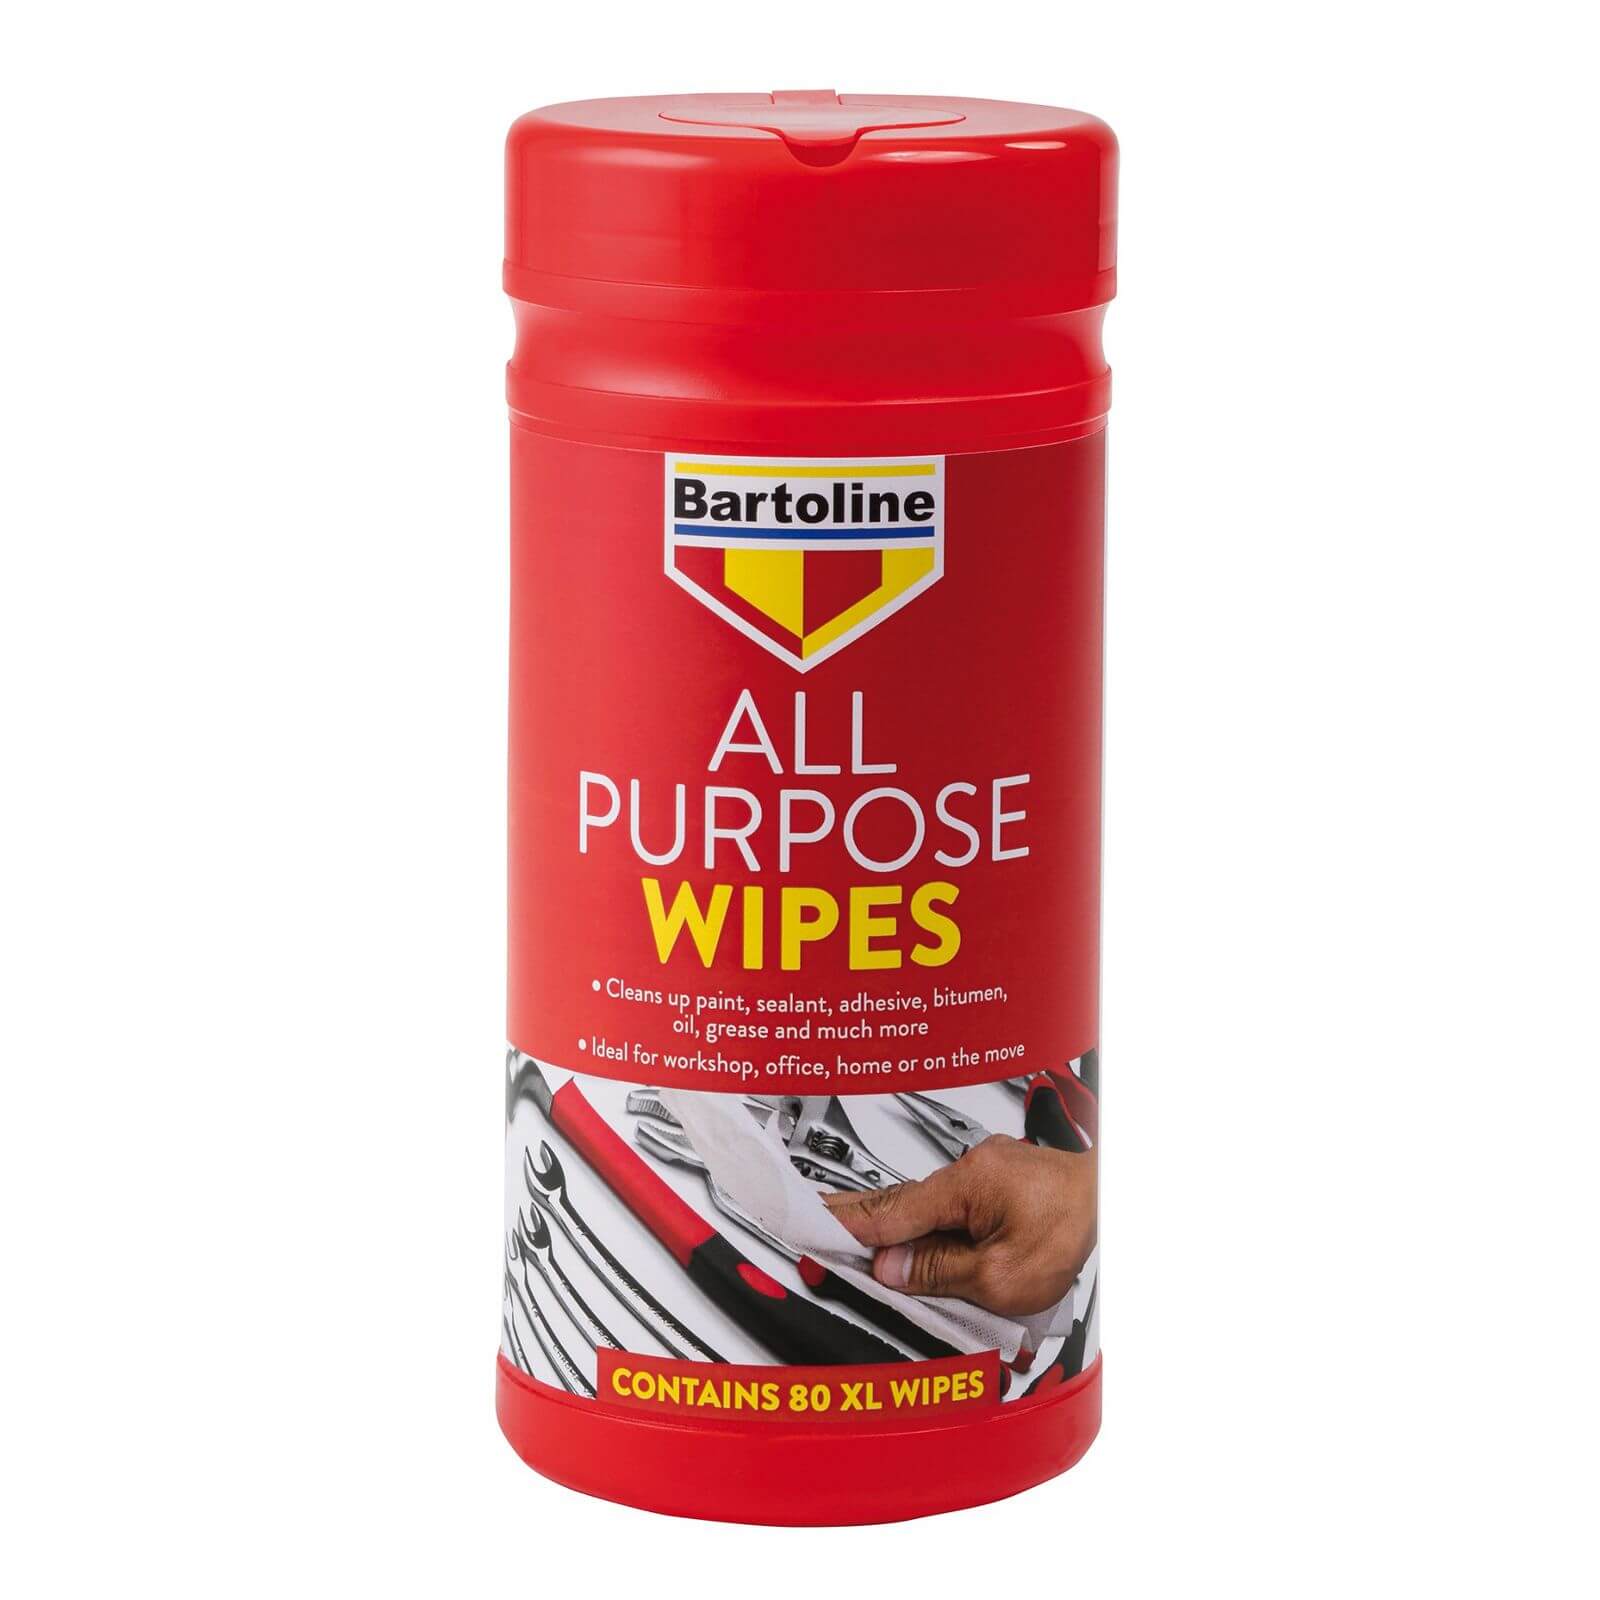 Bartoline All Purpose Wipes - 80XL